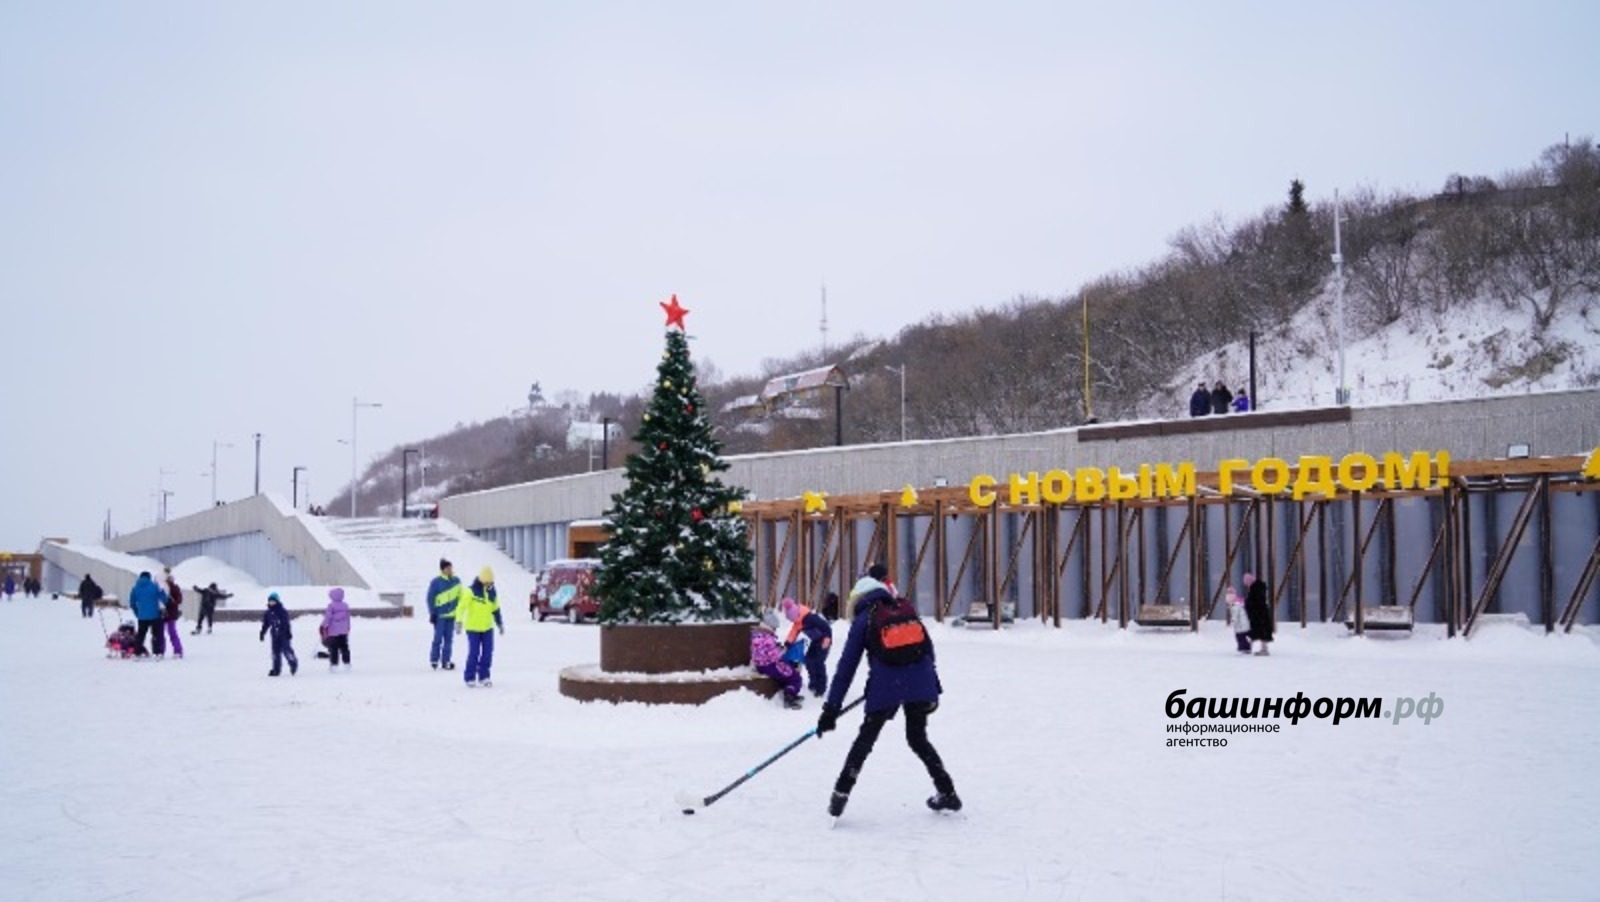 Новогодние туристические объекты Башкирии: к Деду Морозу - на шаттле, к "Лучшему рождественскому столу" или к ледяному мамонту